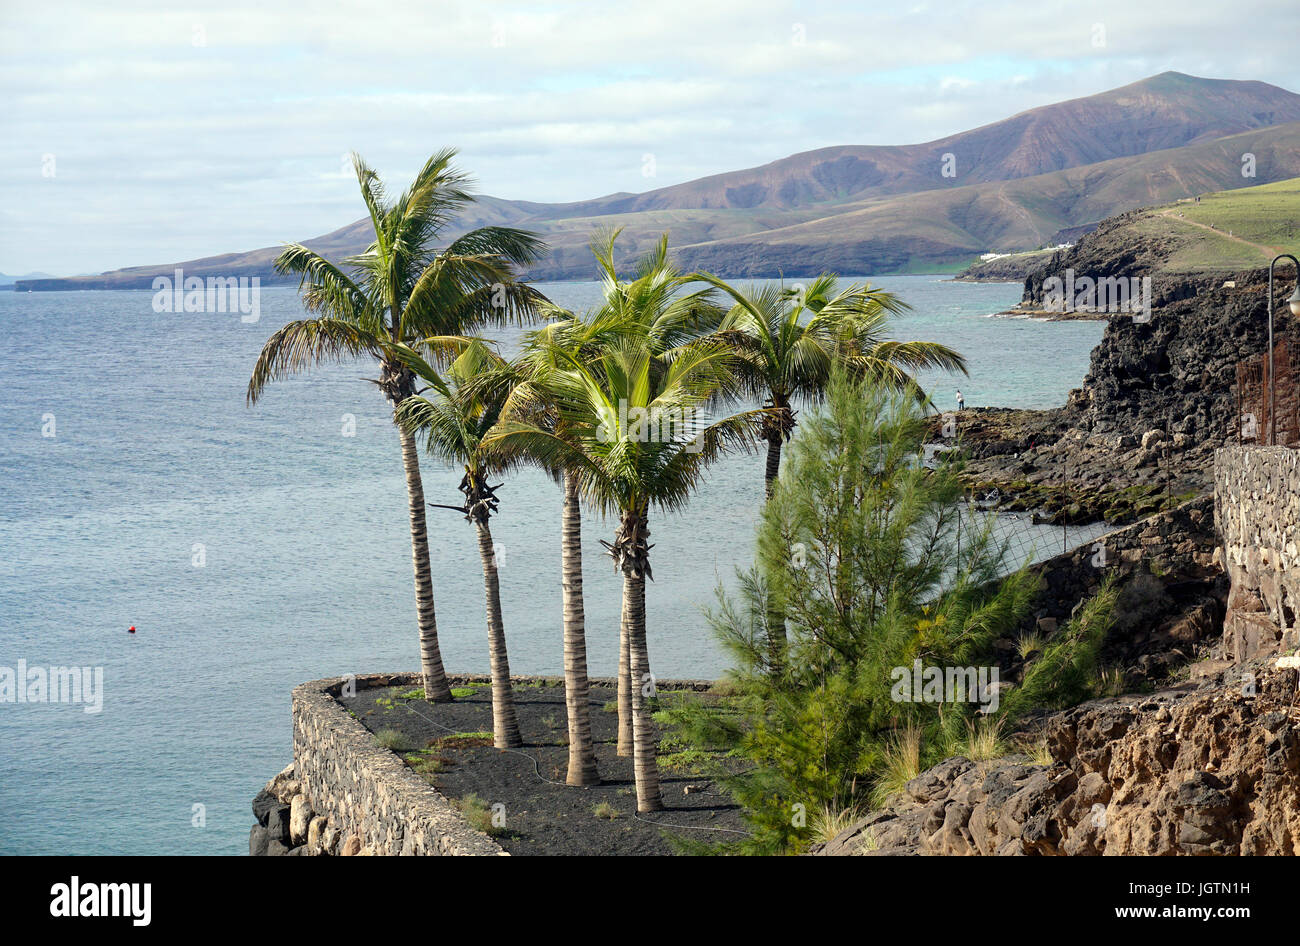 Palmiers à la côte de Puerto Calero, Lanzarote, îles Canaries, Espagne, Europe Banque D'Images